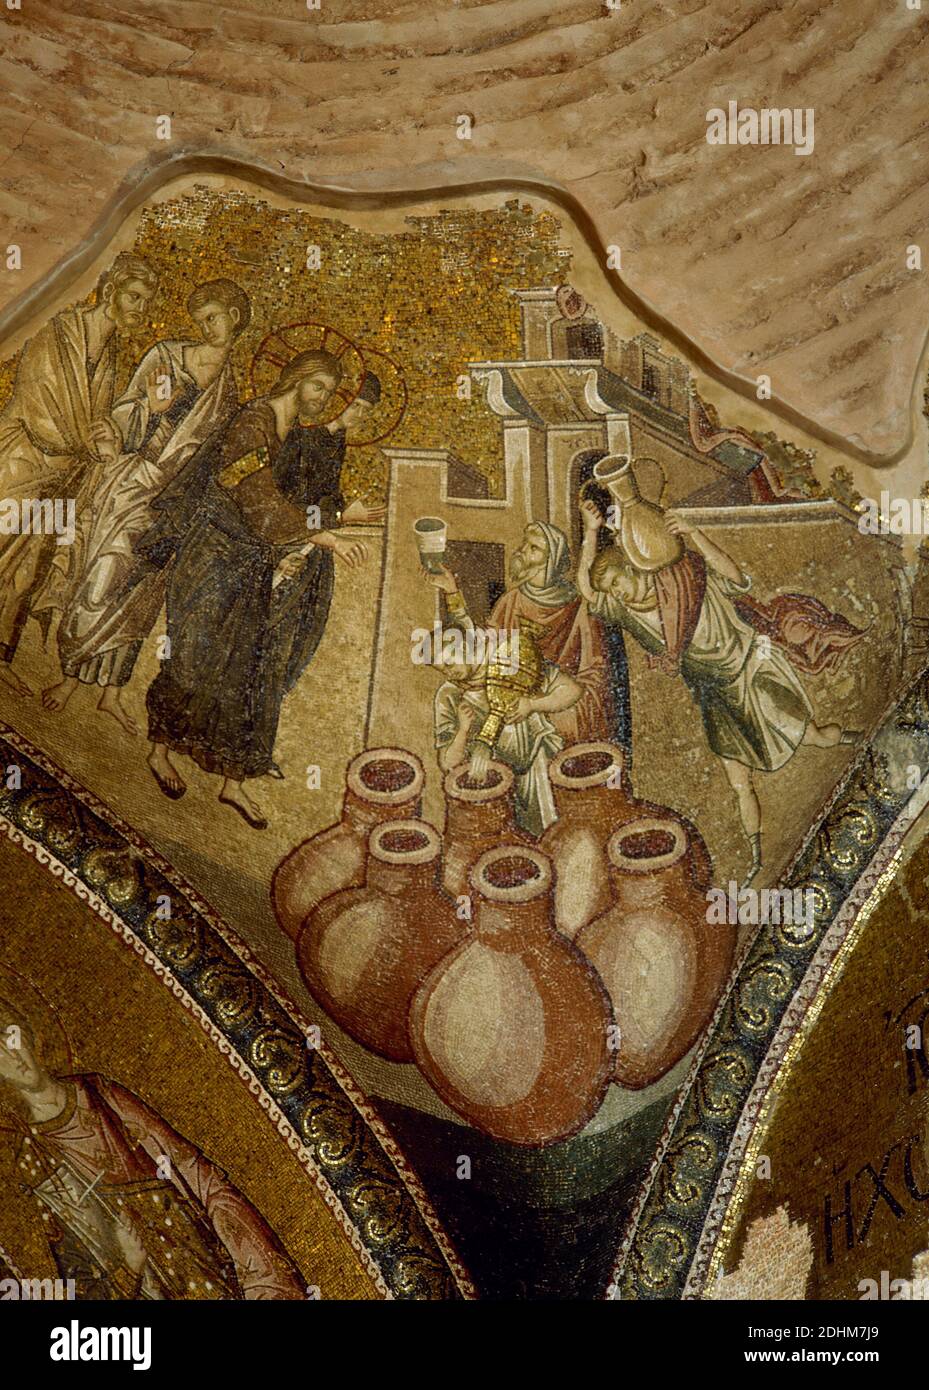 Türkei, Istanbul. Kirche des Heiligen Erlösers in Chora. Byzantinischer Stil. Äußere narthex Mosaik, 14. Jahrhundert. Das Weinwunder von Kana. Als der Wein bei der Hochzeit fertig war, sagte Christus den Dienern, die Amphoren mit Wasser zu füllen, das später zu Wein wurde. Stockfoto